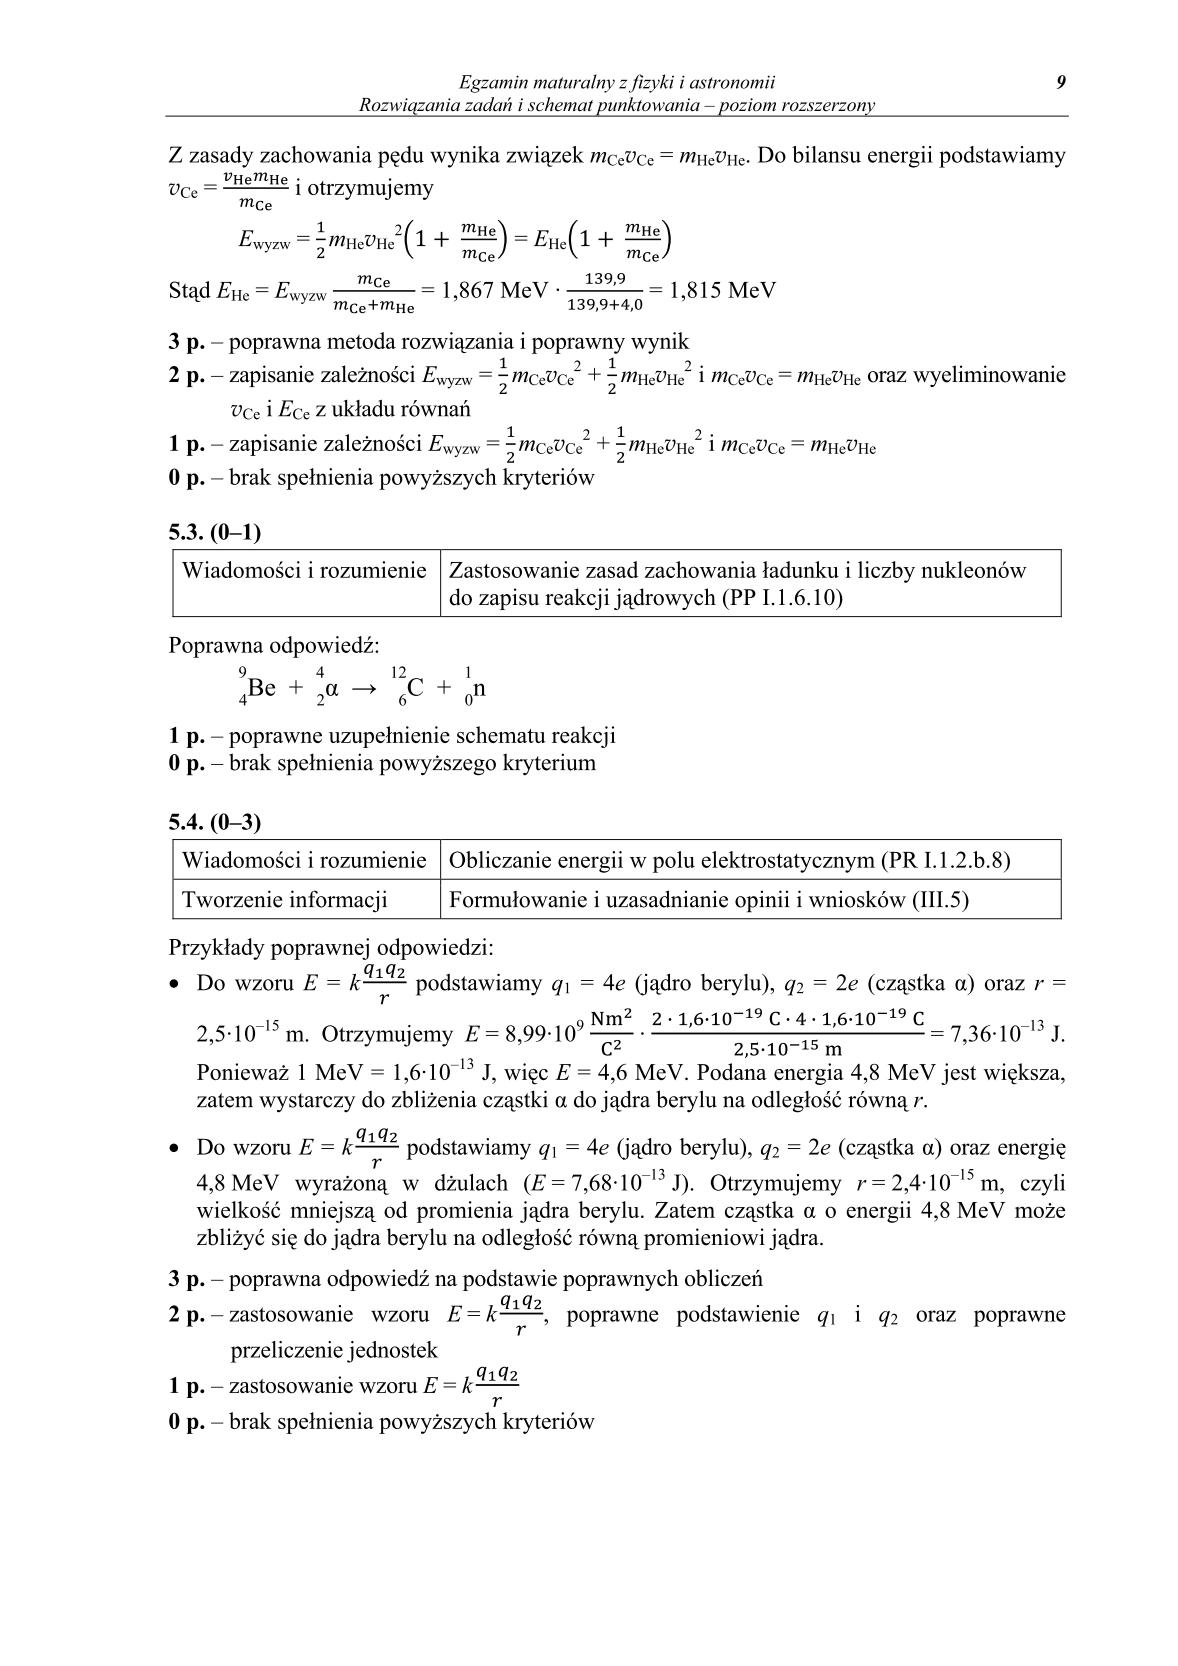 odpowiedzi-fizyka-i-astronomia-poziom-rozszerzony-matura-2014-str.9